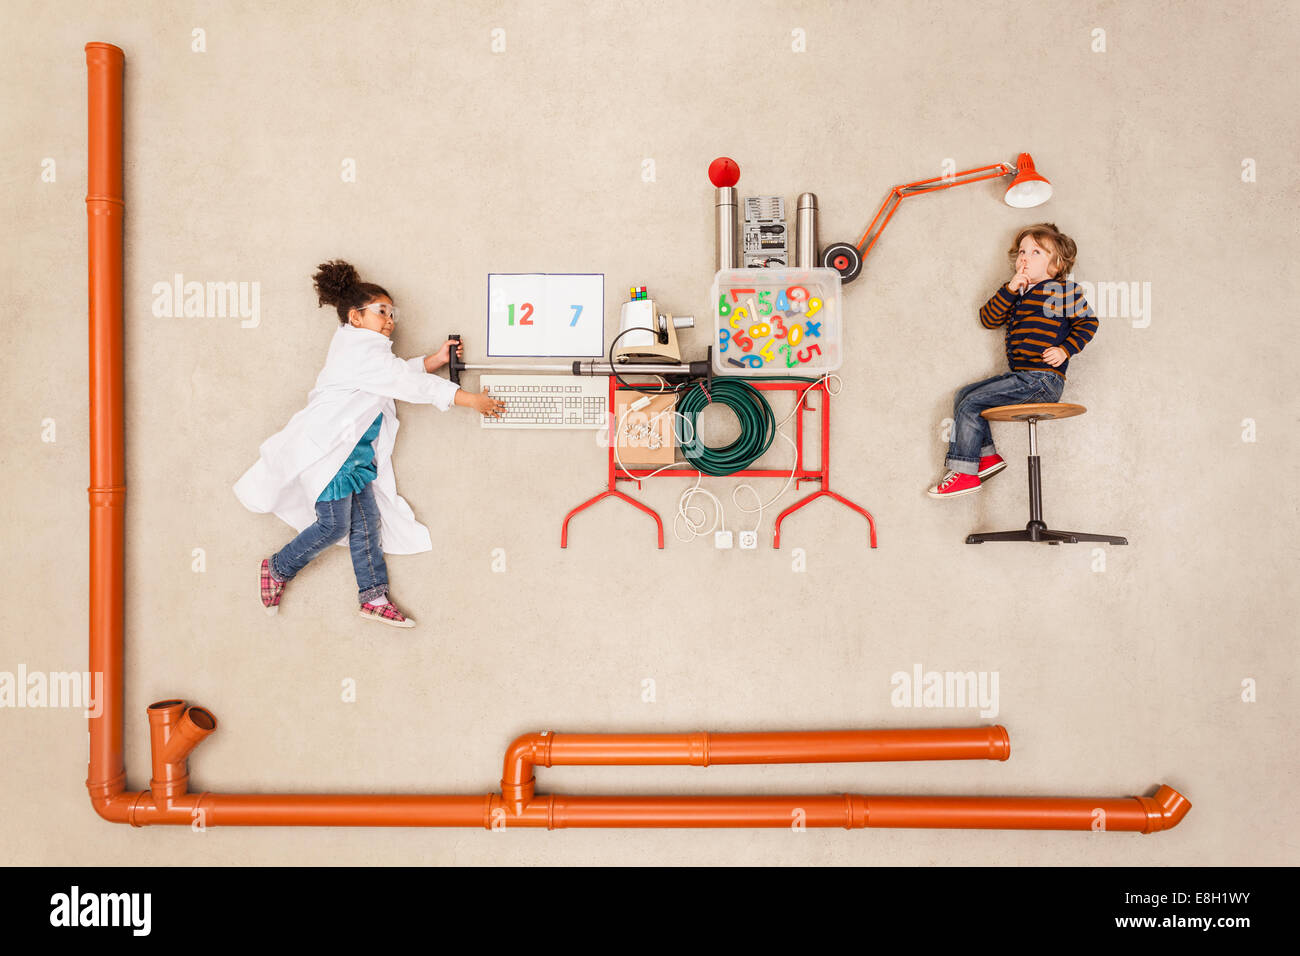 Kinder wunderbare lernen Maschine erstellen Stockfoto